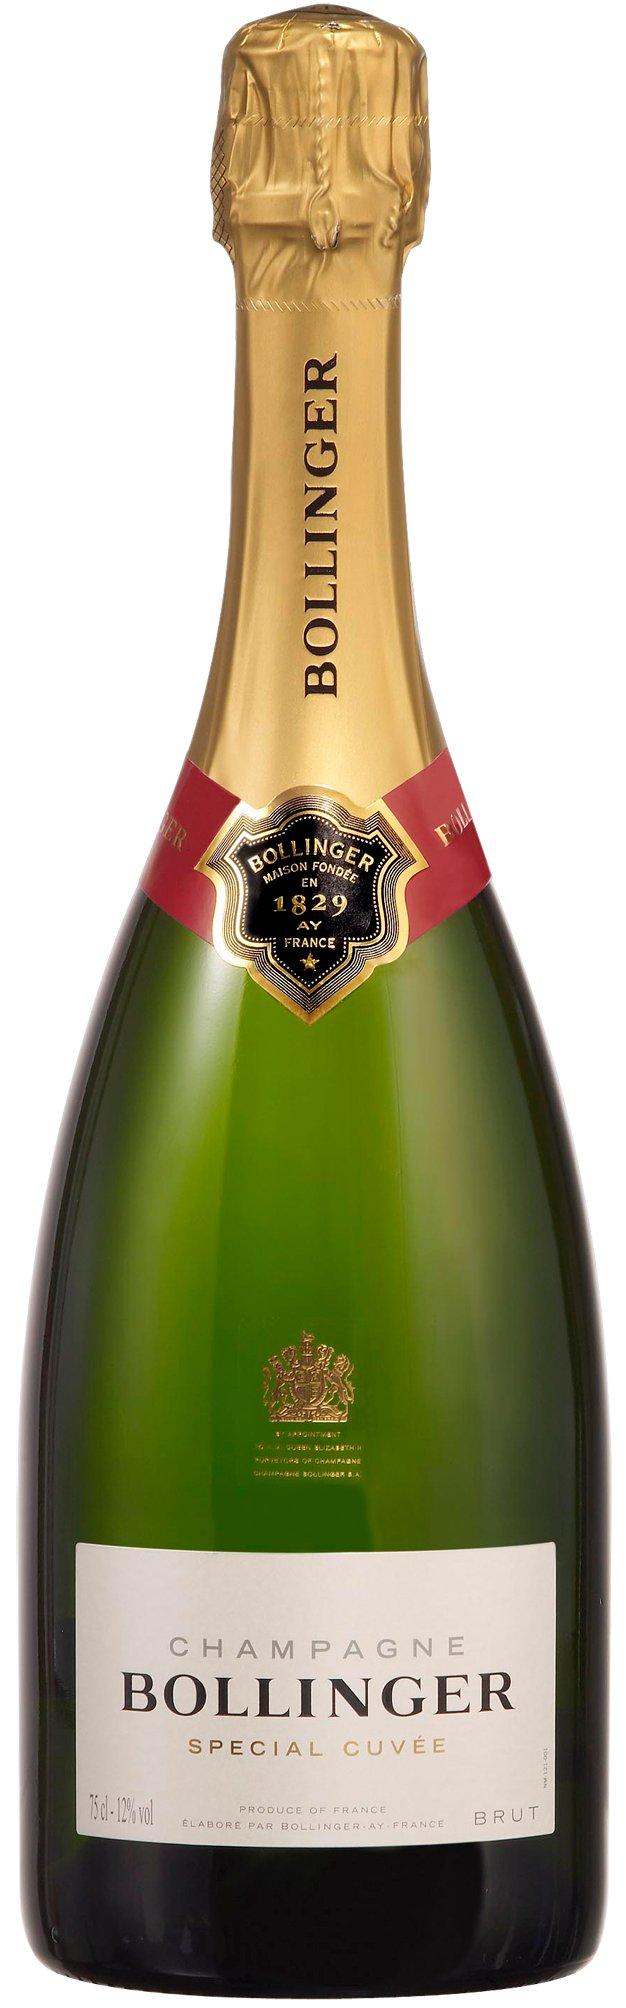 Champagne Bollinger Bollinger Special Cuvée Champagne Brut, Champagne AOC  